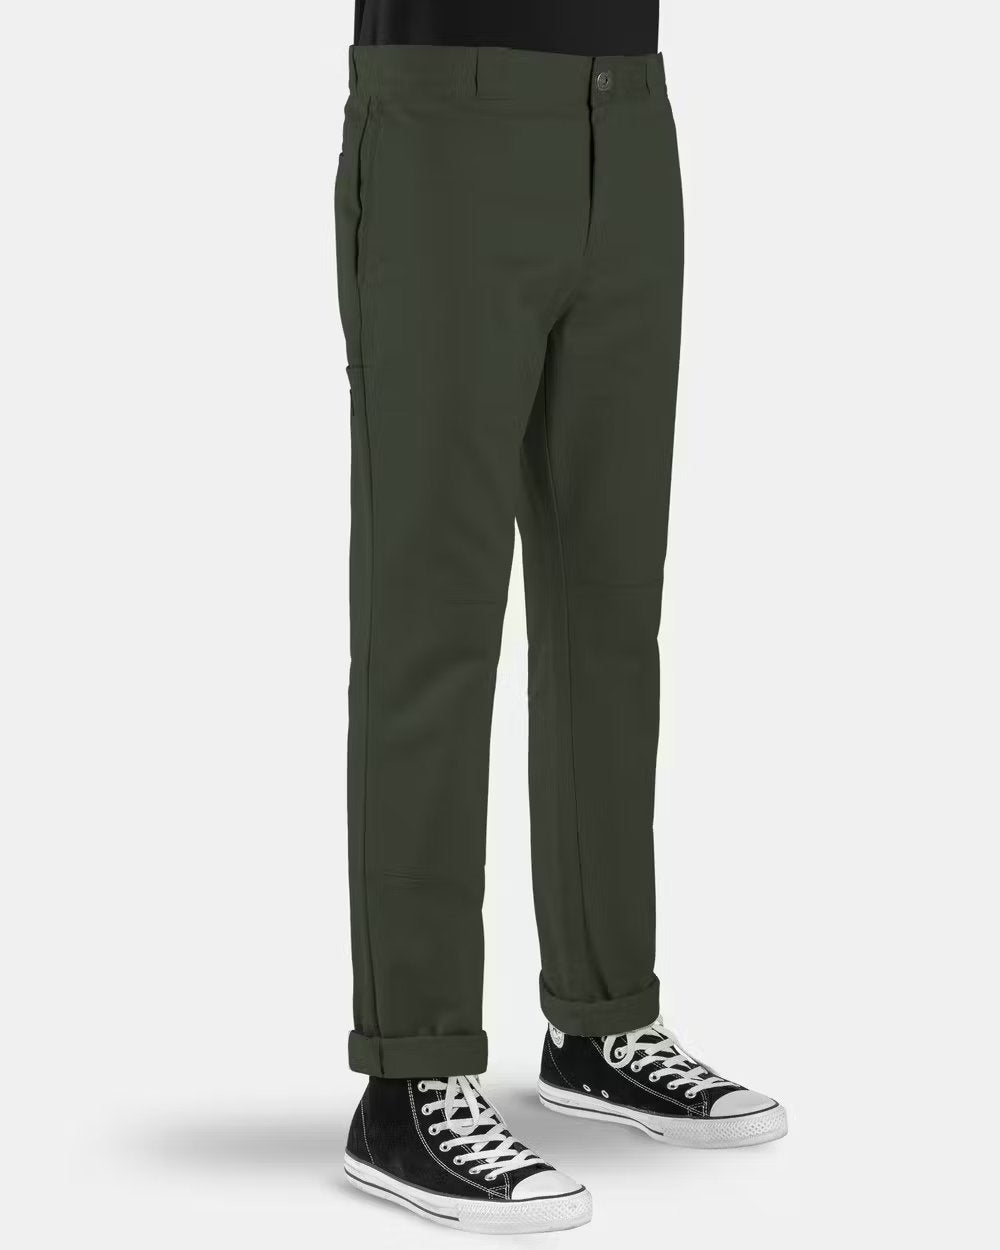 DICKIES 918 Slim Fit Double Knee Pants - Army Green - VENUE.